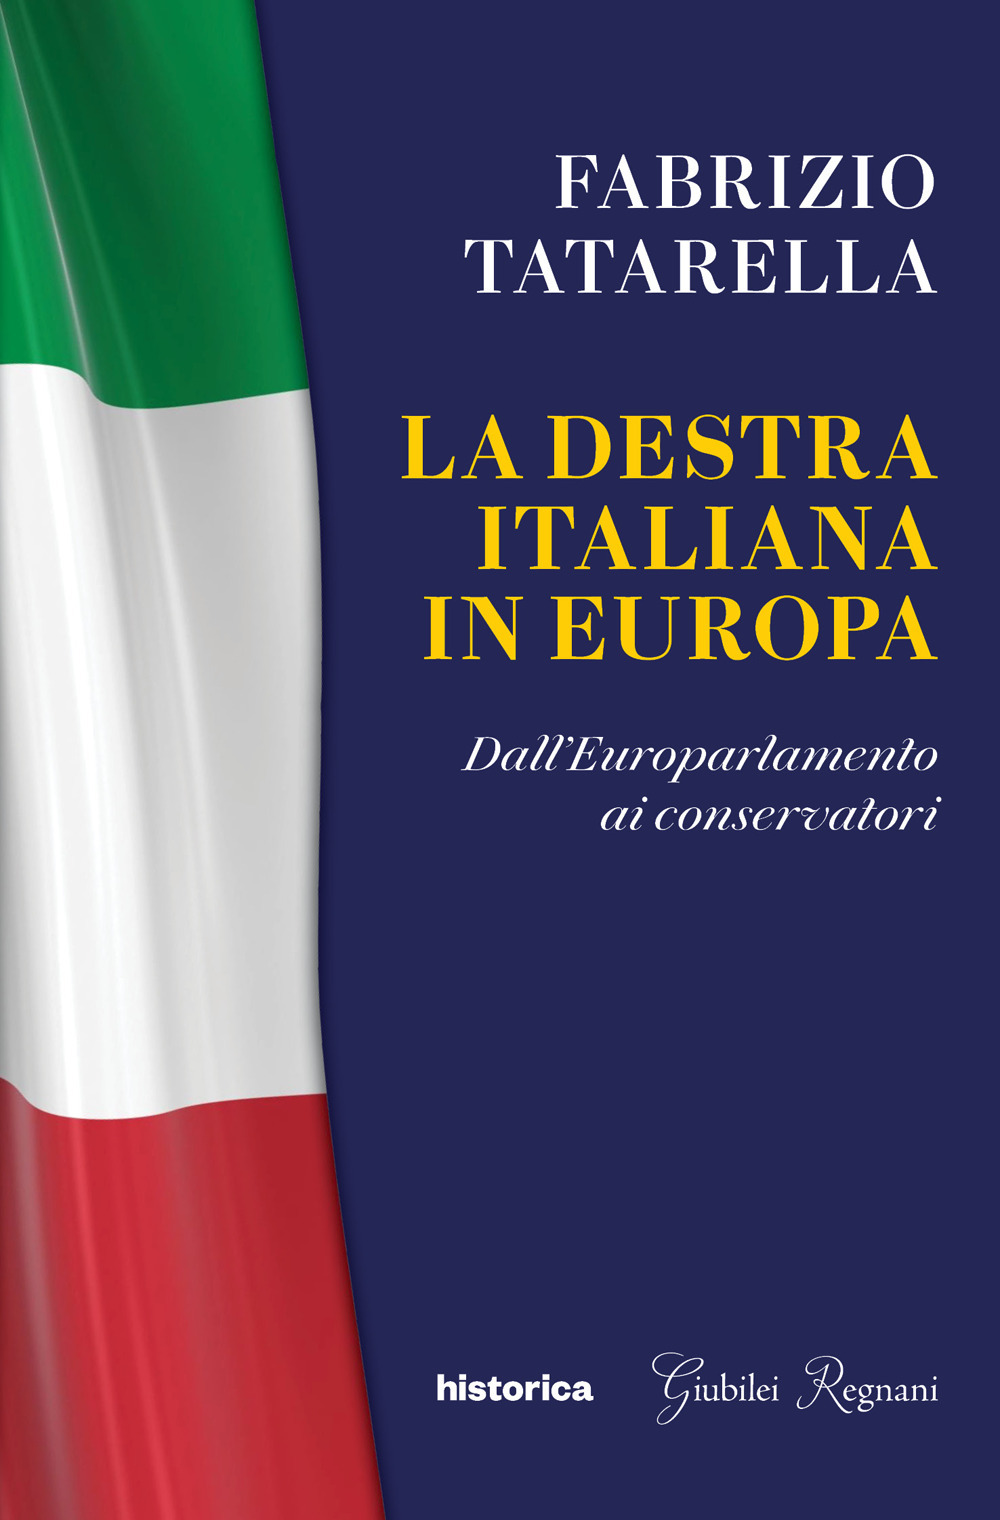 La destra italiana in Europa. Dall'europarlamento ai conservatori